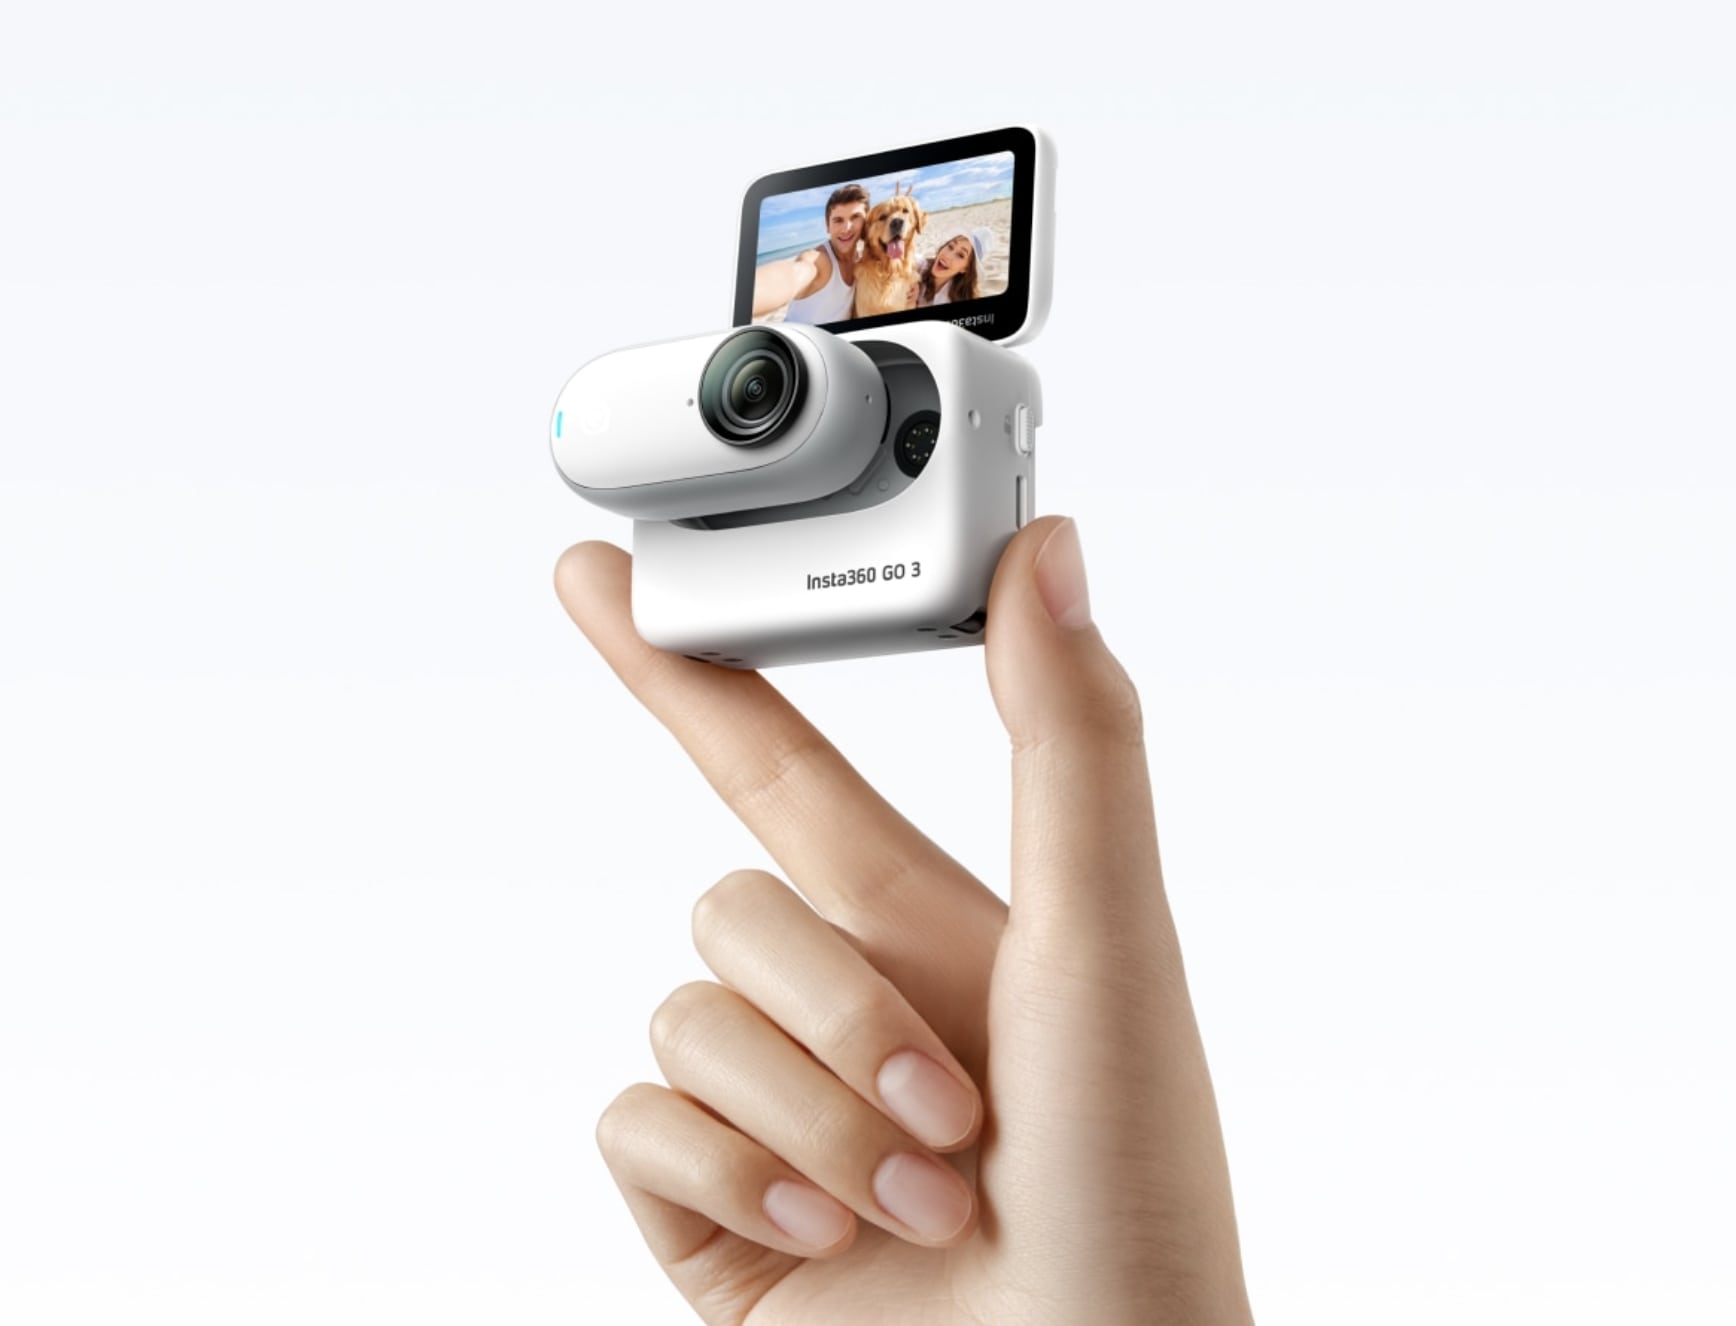 Podobnie jak GoPro z modułowym, odchylanym ekranem: niewielka kamera sportowa Insta360 Go 3